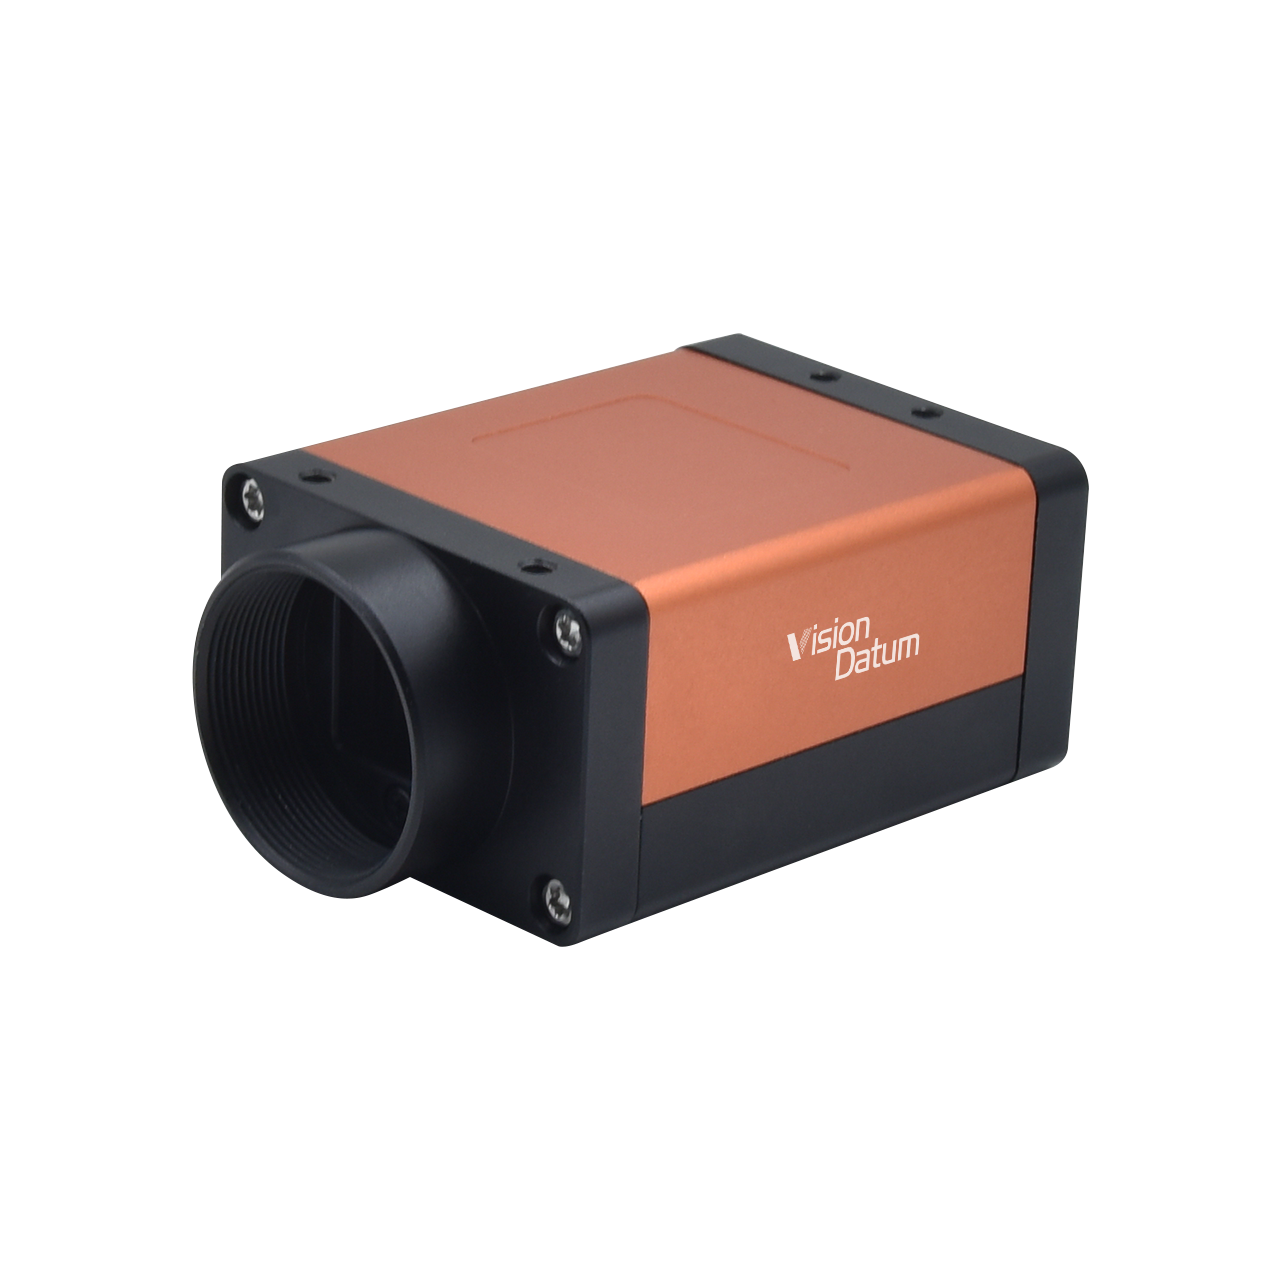 5-мегапиксельная камера IMX250, 150 кадров в секунду, камера с глобальным сканированием области затвора CameraLink